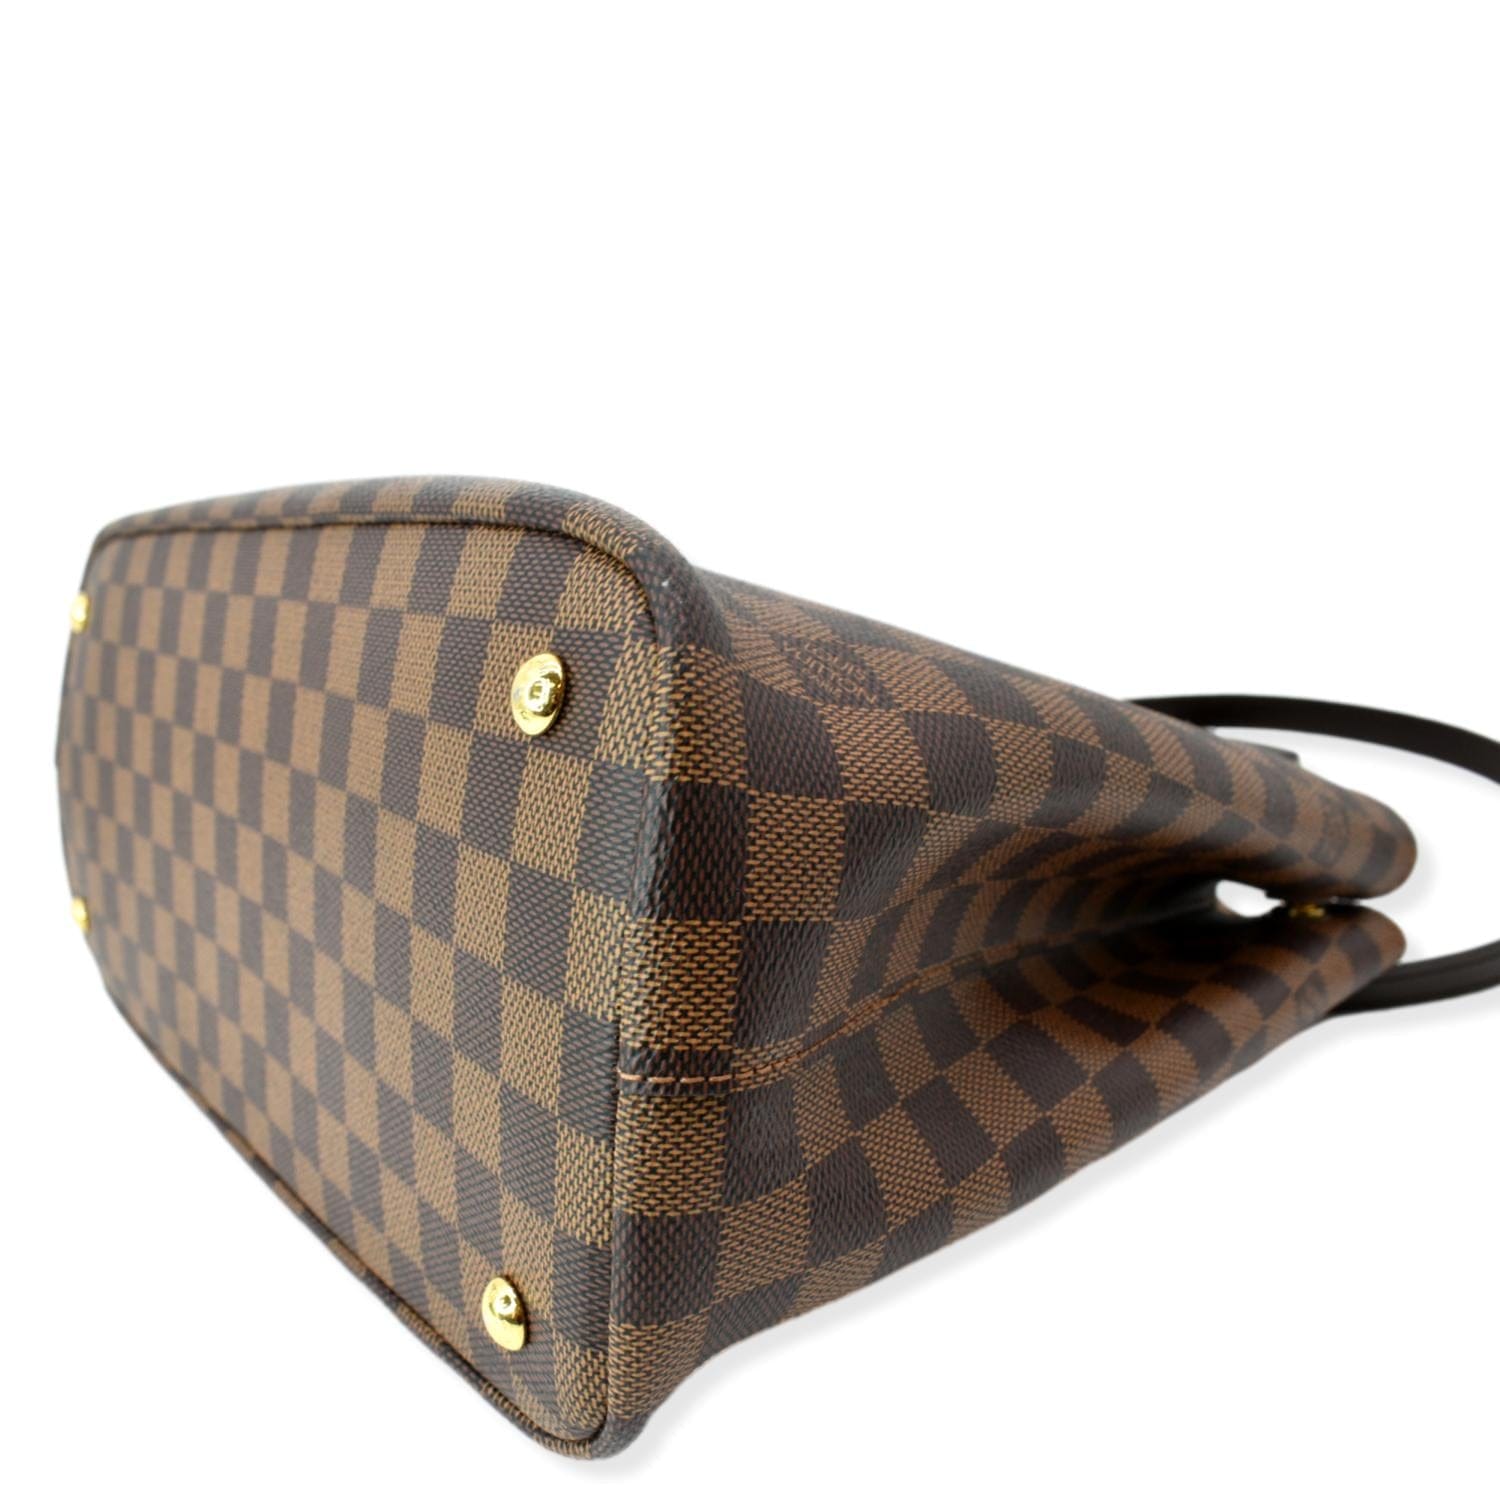 Authentic Louis Vuitton Damier Ebene Kensington Bag N41435